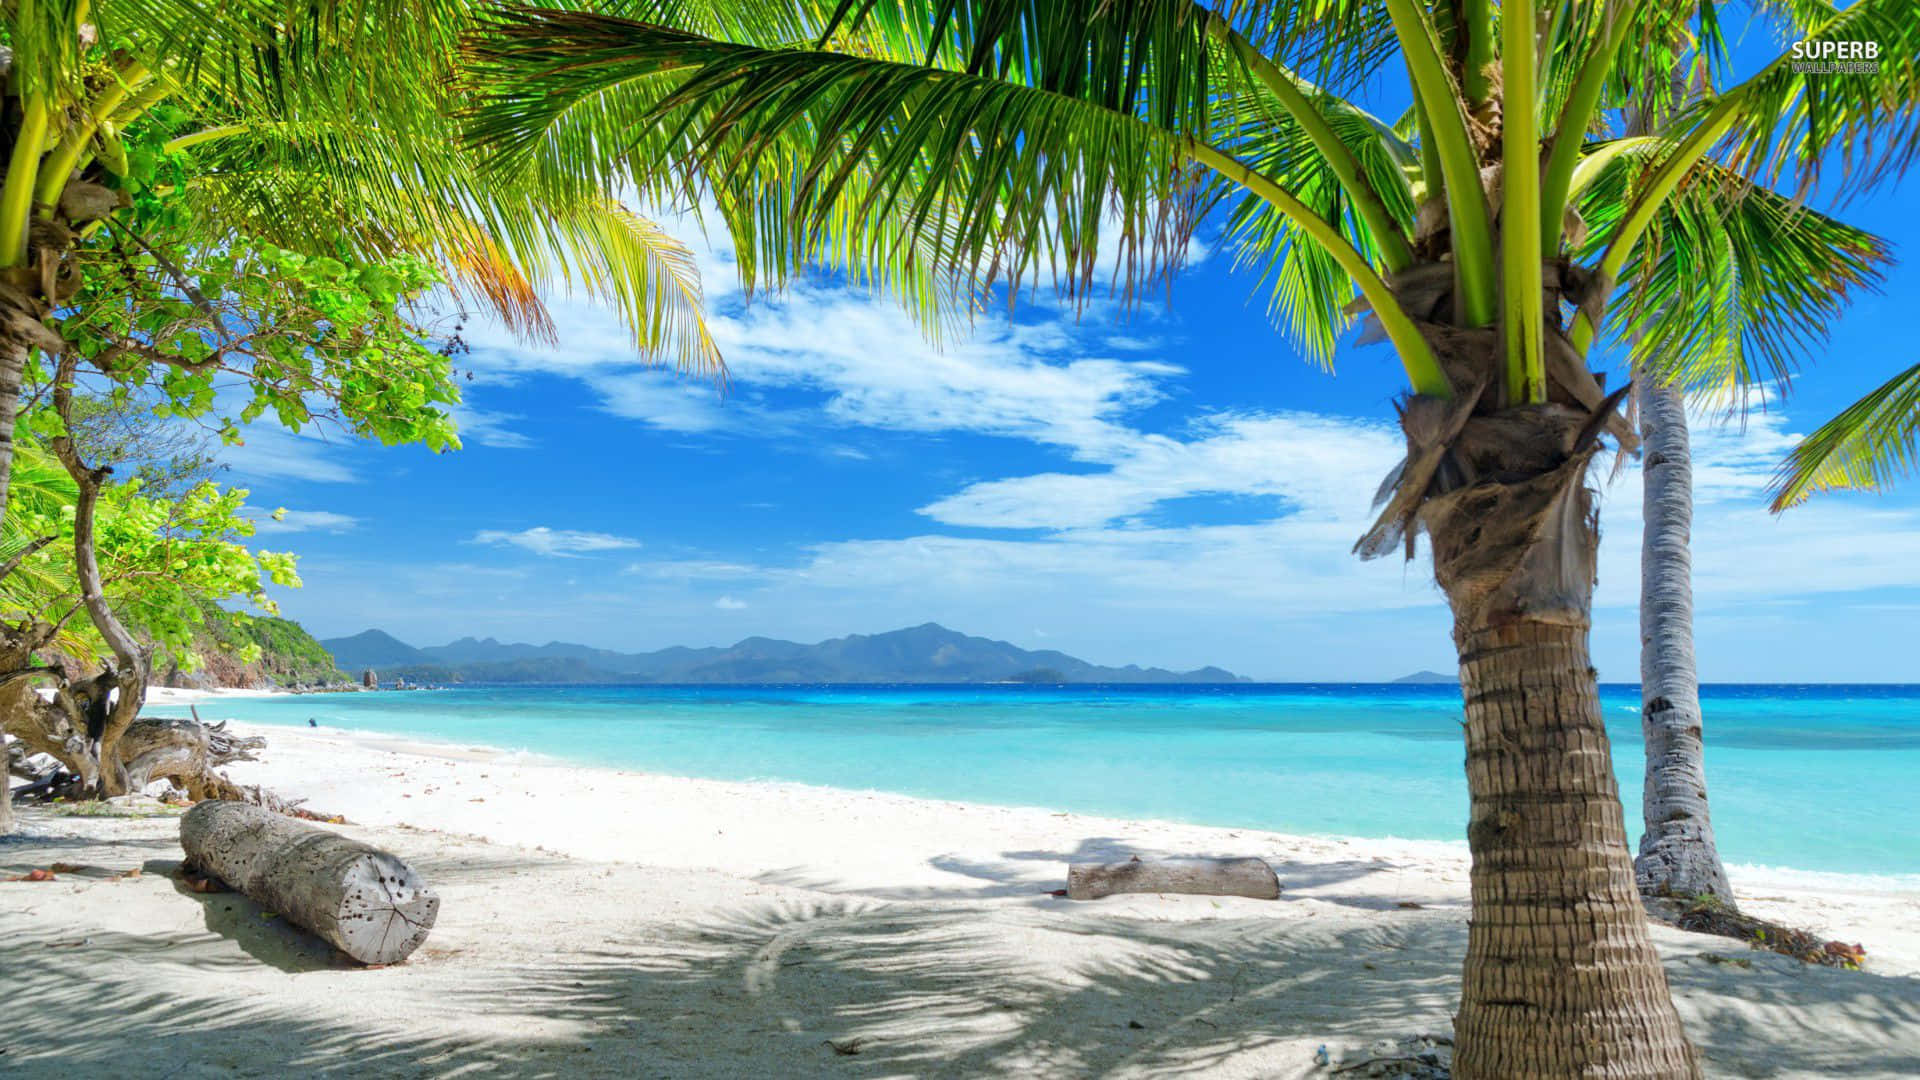 Einträumerischer Tropischer Strand Mit Strahlend Blauem Wasser Und Weichem Weißen Sand. Wallpaper